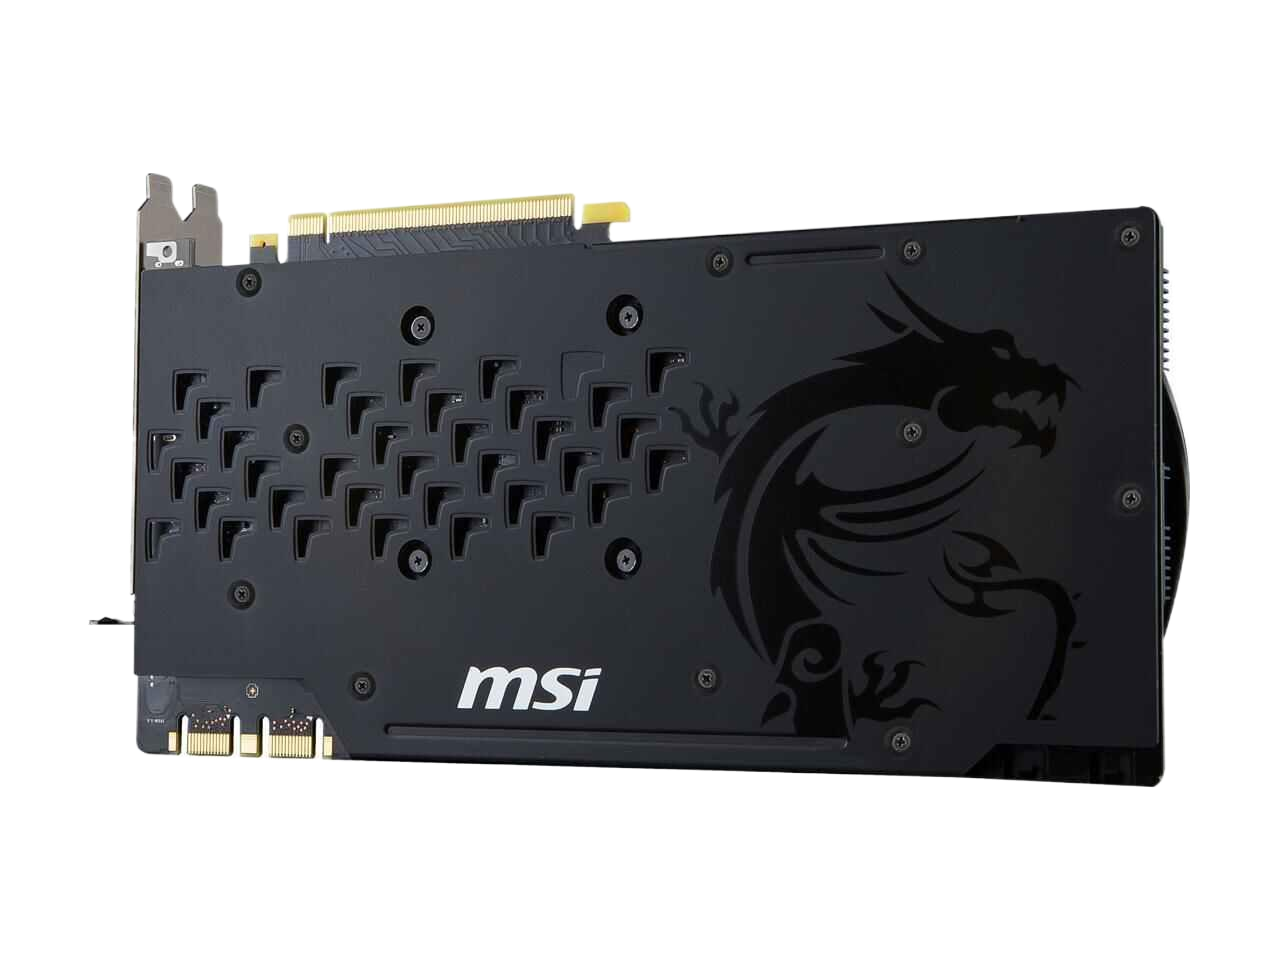 MSI GeForce GTX 1080 8GB GDDR5X PCI Express 3.0 x16 SLI Support Video Card